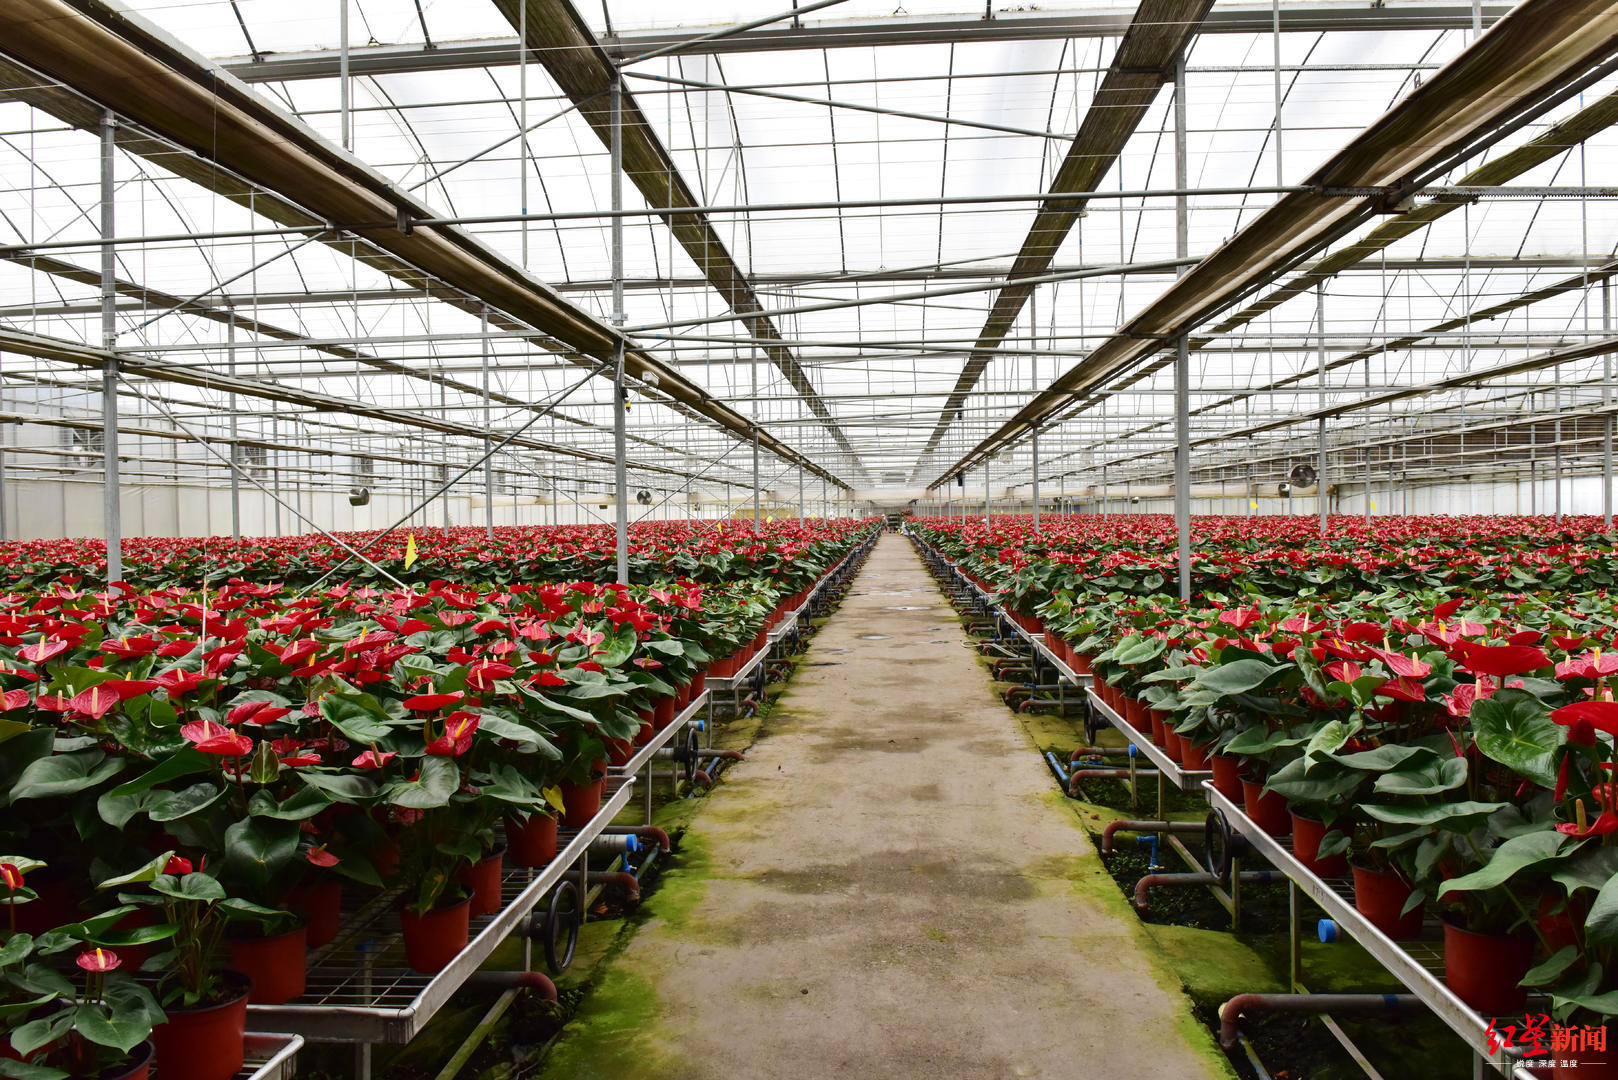 3月15日,位于西昌市礼州镇的现代花卉产业园区,数千亩花卉大棚连接